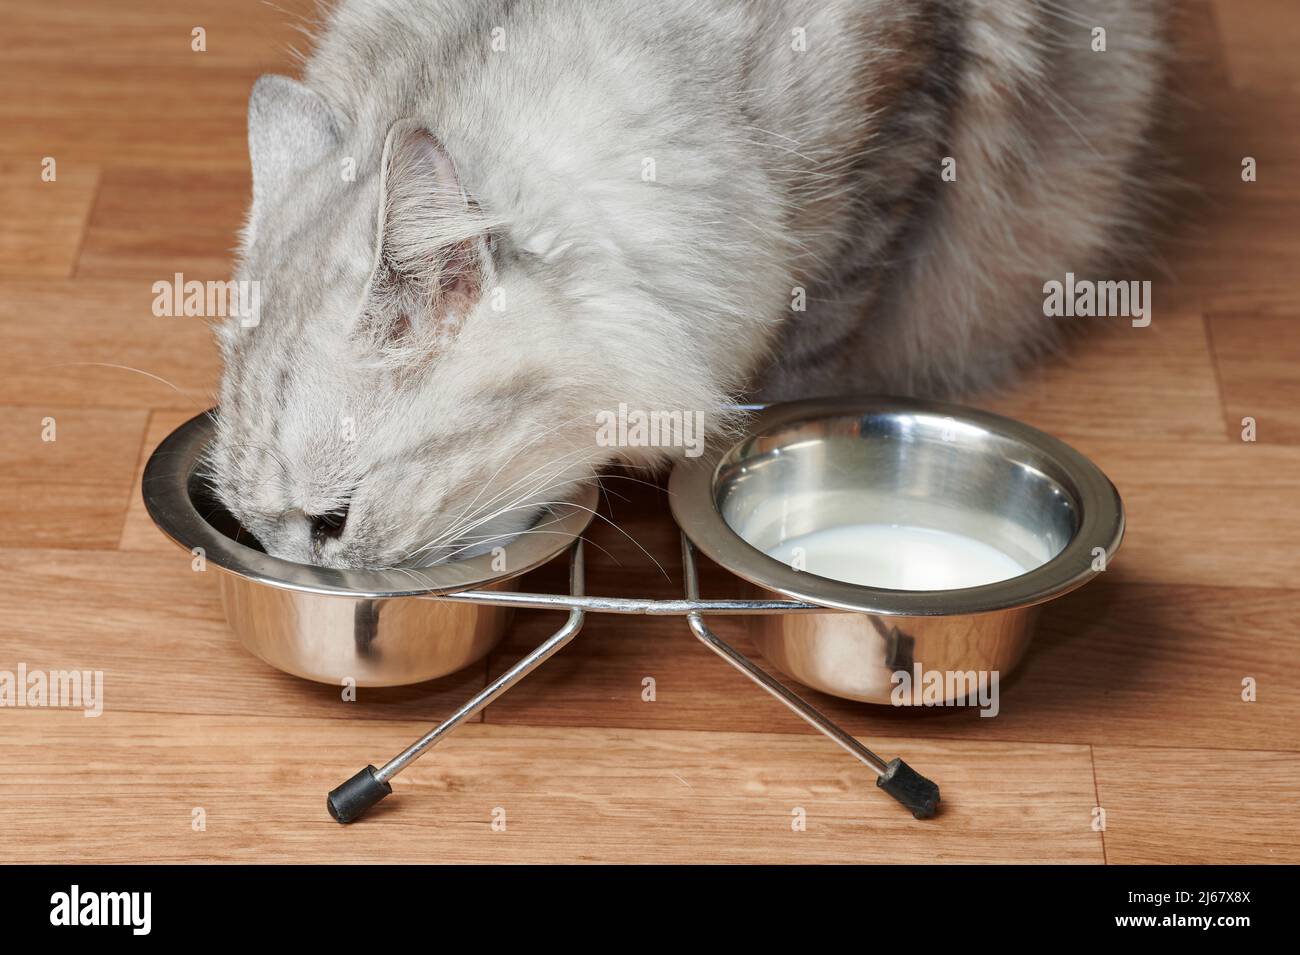 Haarige Katze, die Nahrung aus Metallschüsseln auf dem Holzhausboden isst Stockfoto